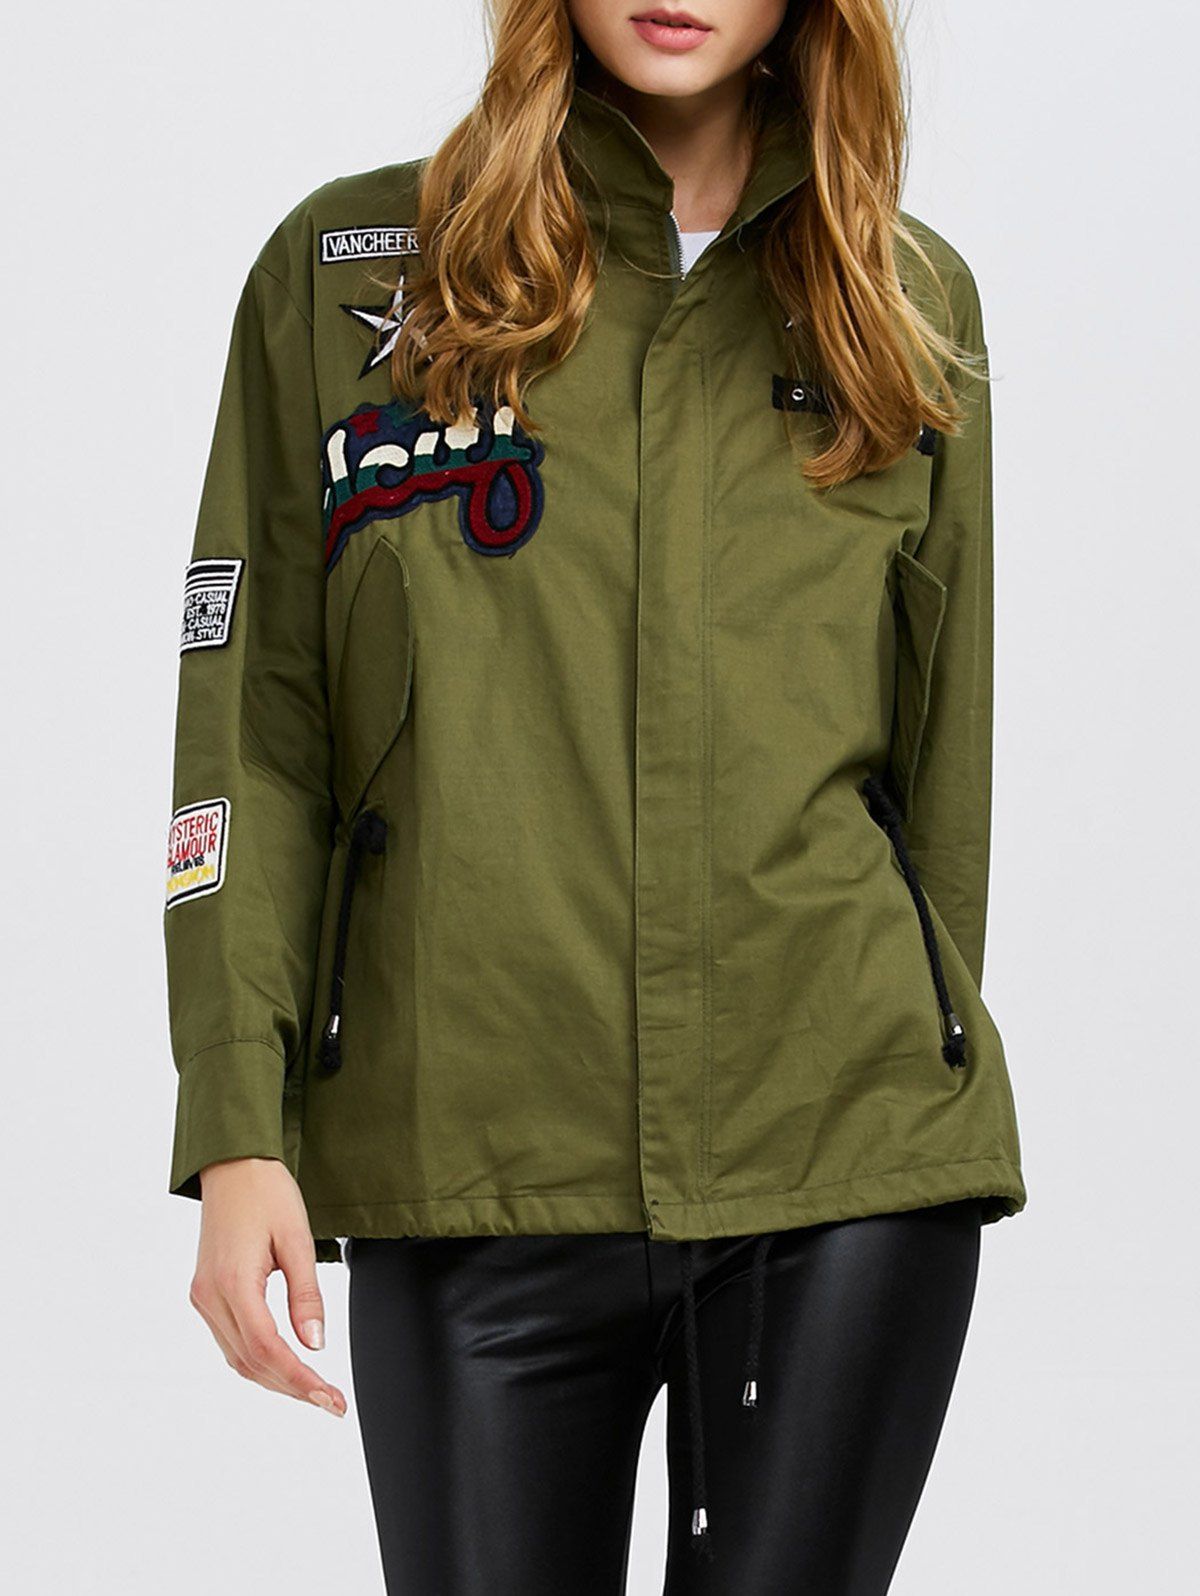 Fashion Turn-down Collar Long Sleeve Zipper Type Women Coat - ARMY GREEN XL